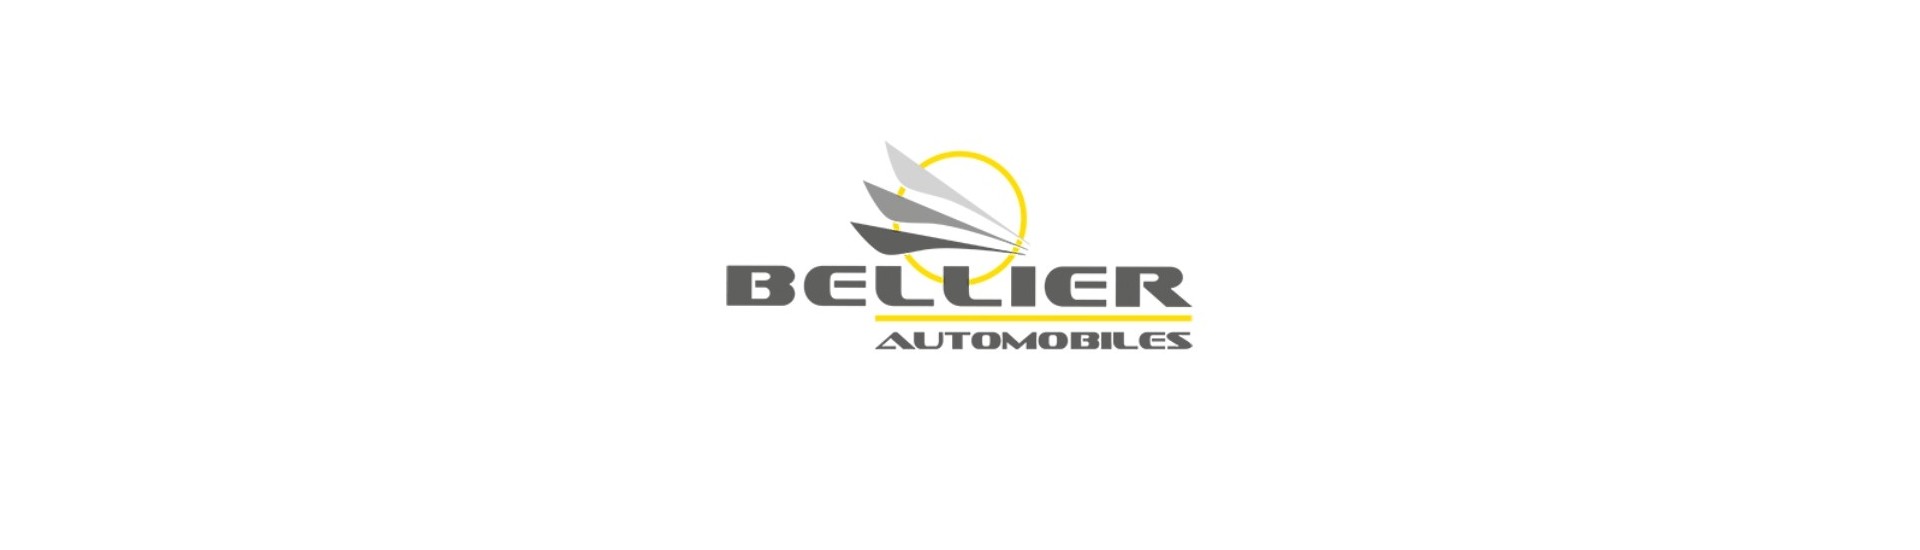 Suspension roll till bästa pris för bil utan tillstånd Bellier